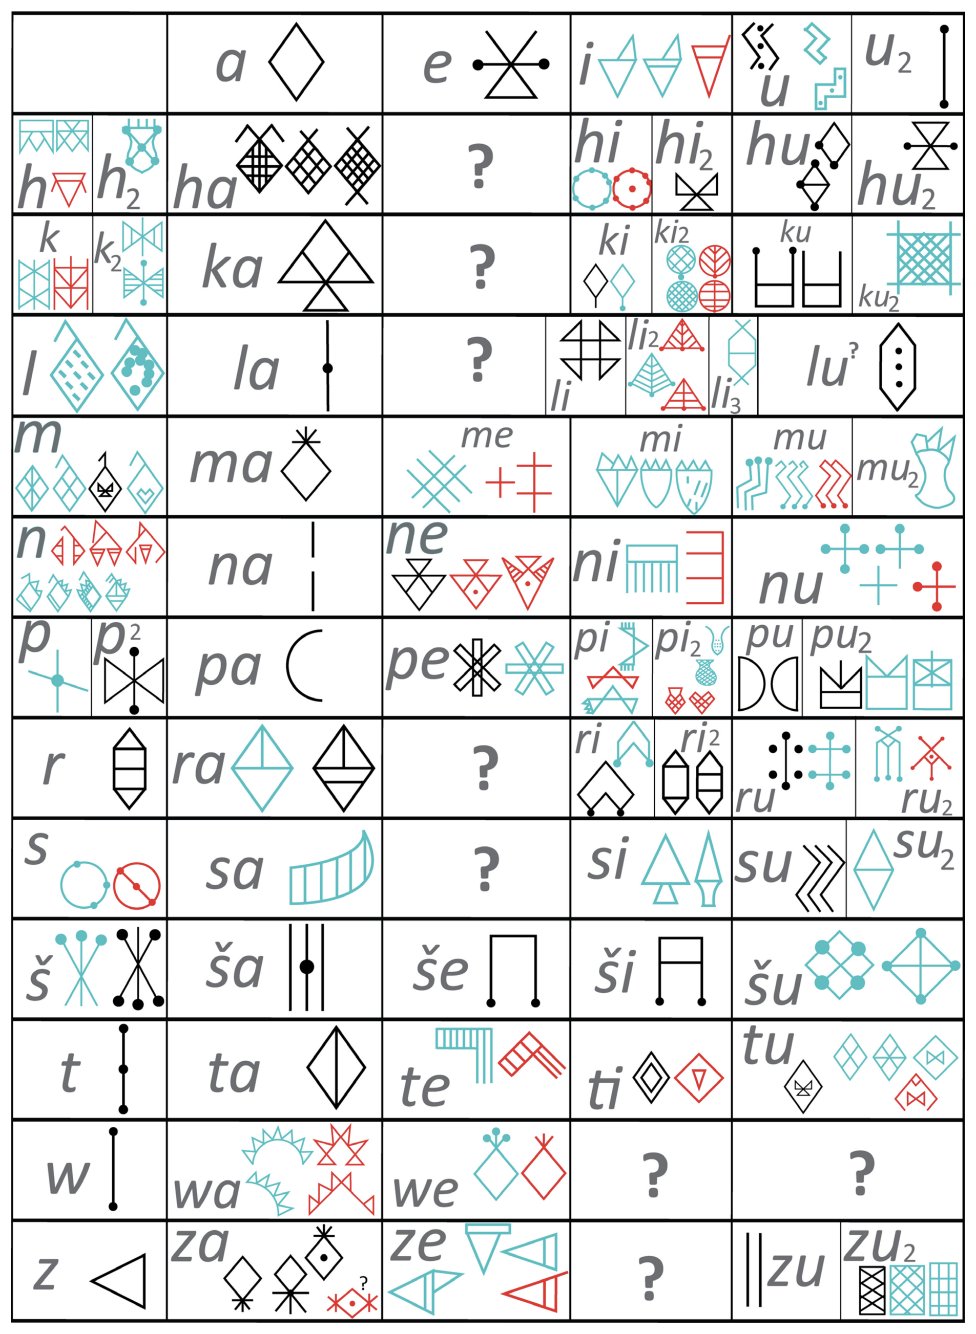 Kisi-kisi dari 72 tanda alfa-suku kata yang diuraikan yang menjadi dasar sistem transliterasi Linear Elamite. Varian grafik yang paling umum ditampilkan untuk setiap tanda. Tanda biru dibuktikan di Iran barat daya, yang merah di Iran tenggara. Tanda hitam umum terjadi di kedua area. F. Desset